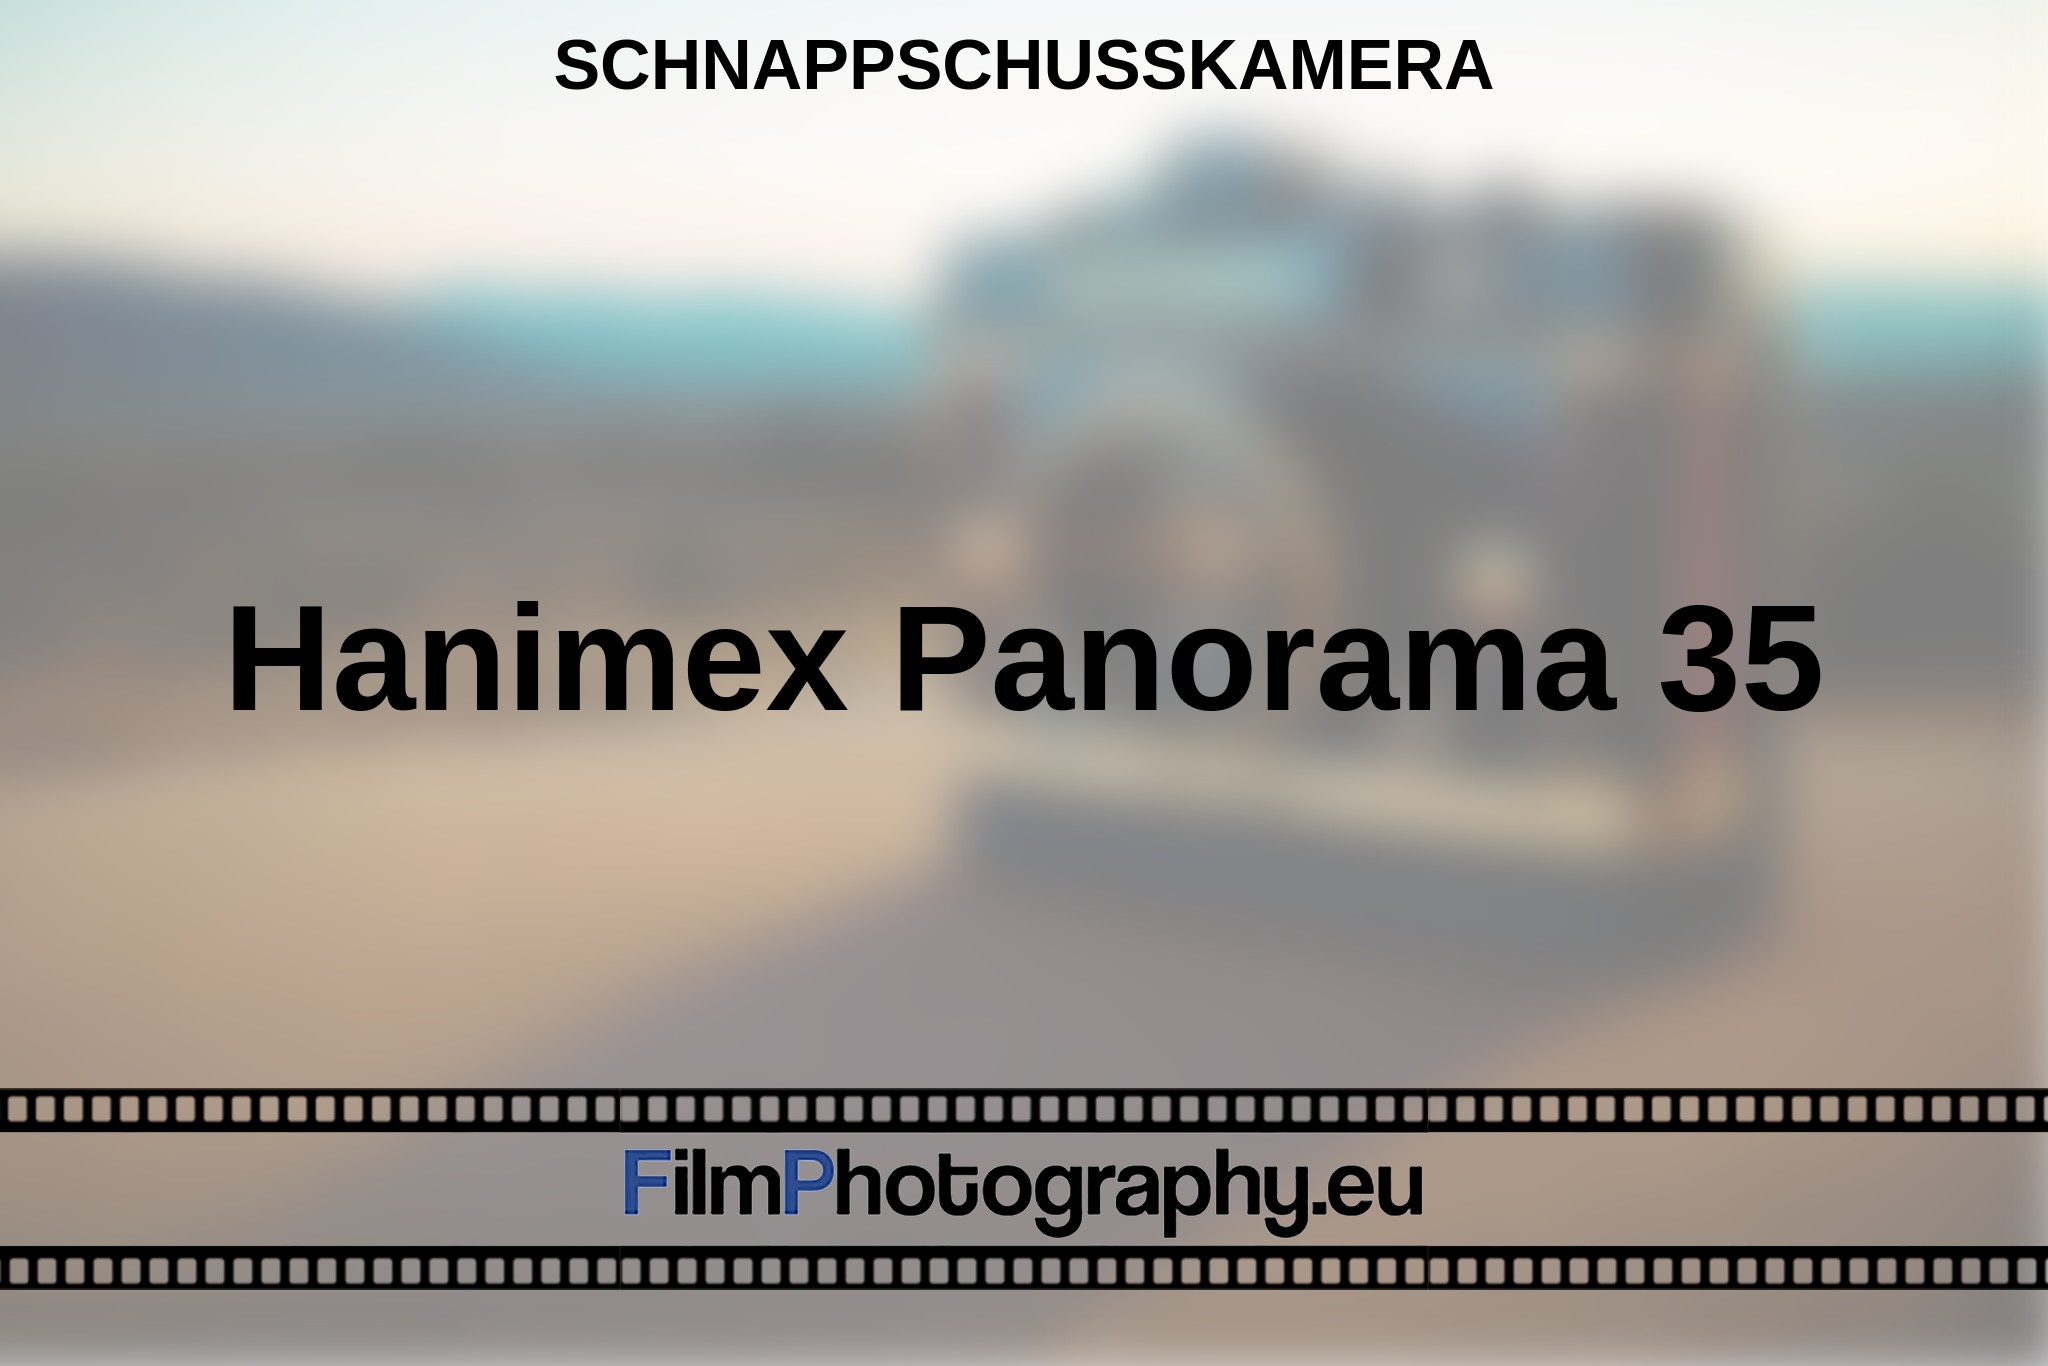 hanimex-panorama-35-schnappschusskamera-bnv.jpg